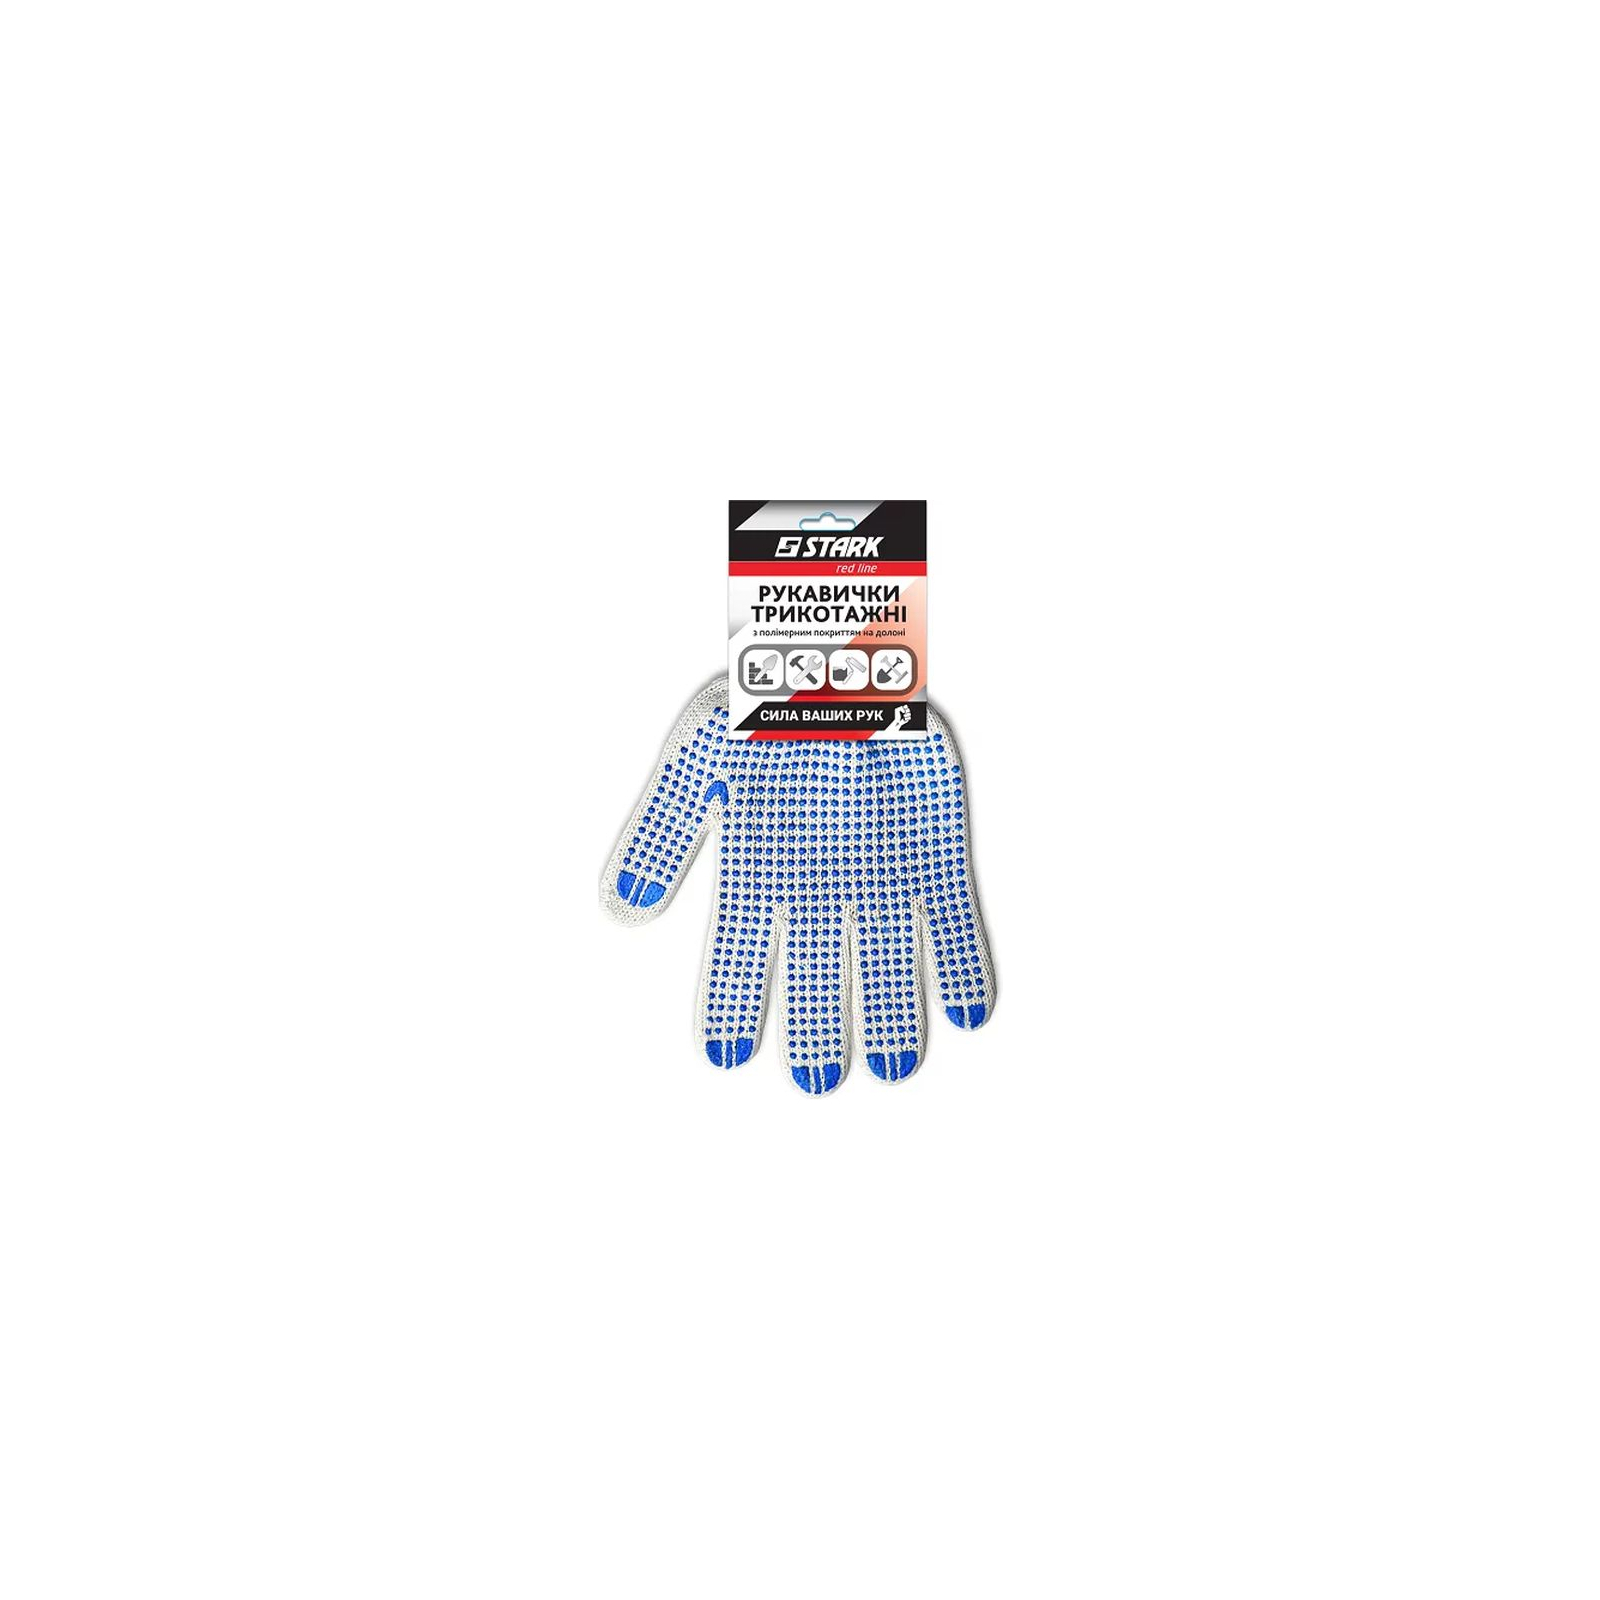 Защитные перчатки Stark White 5 нитей (510851010) изображение 3